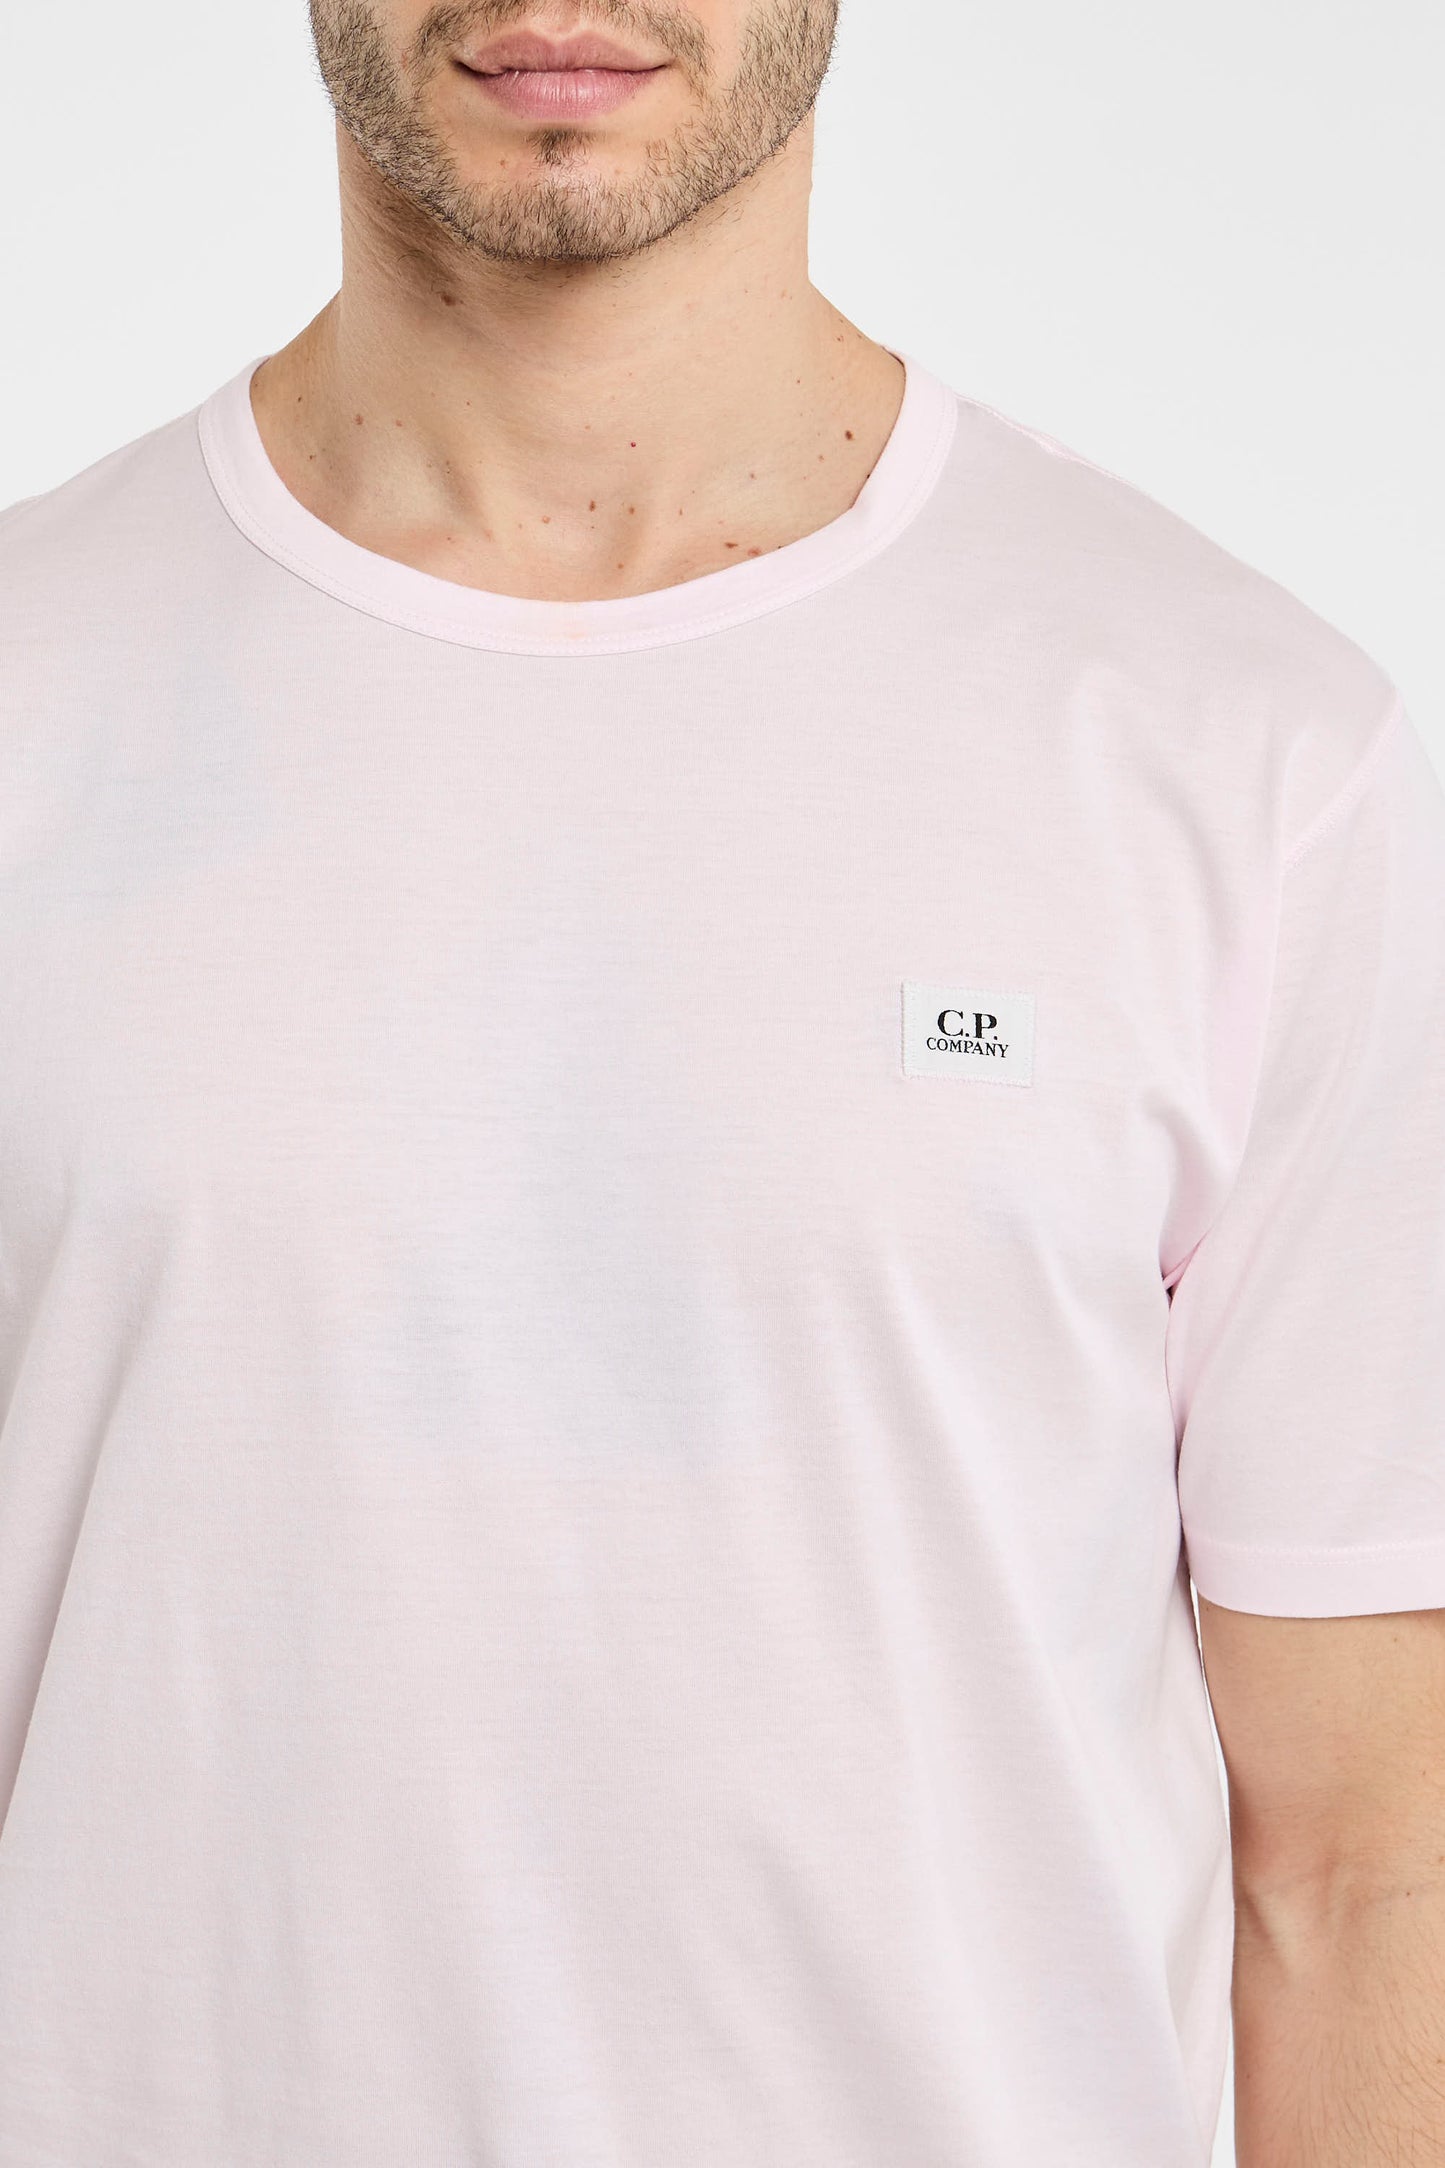  C.p. Company T-shirt 100% Co Multicolor Rosa Uomo - 3